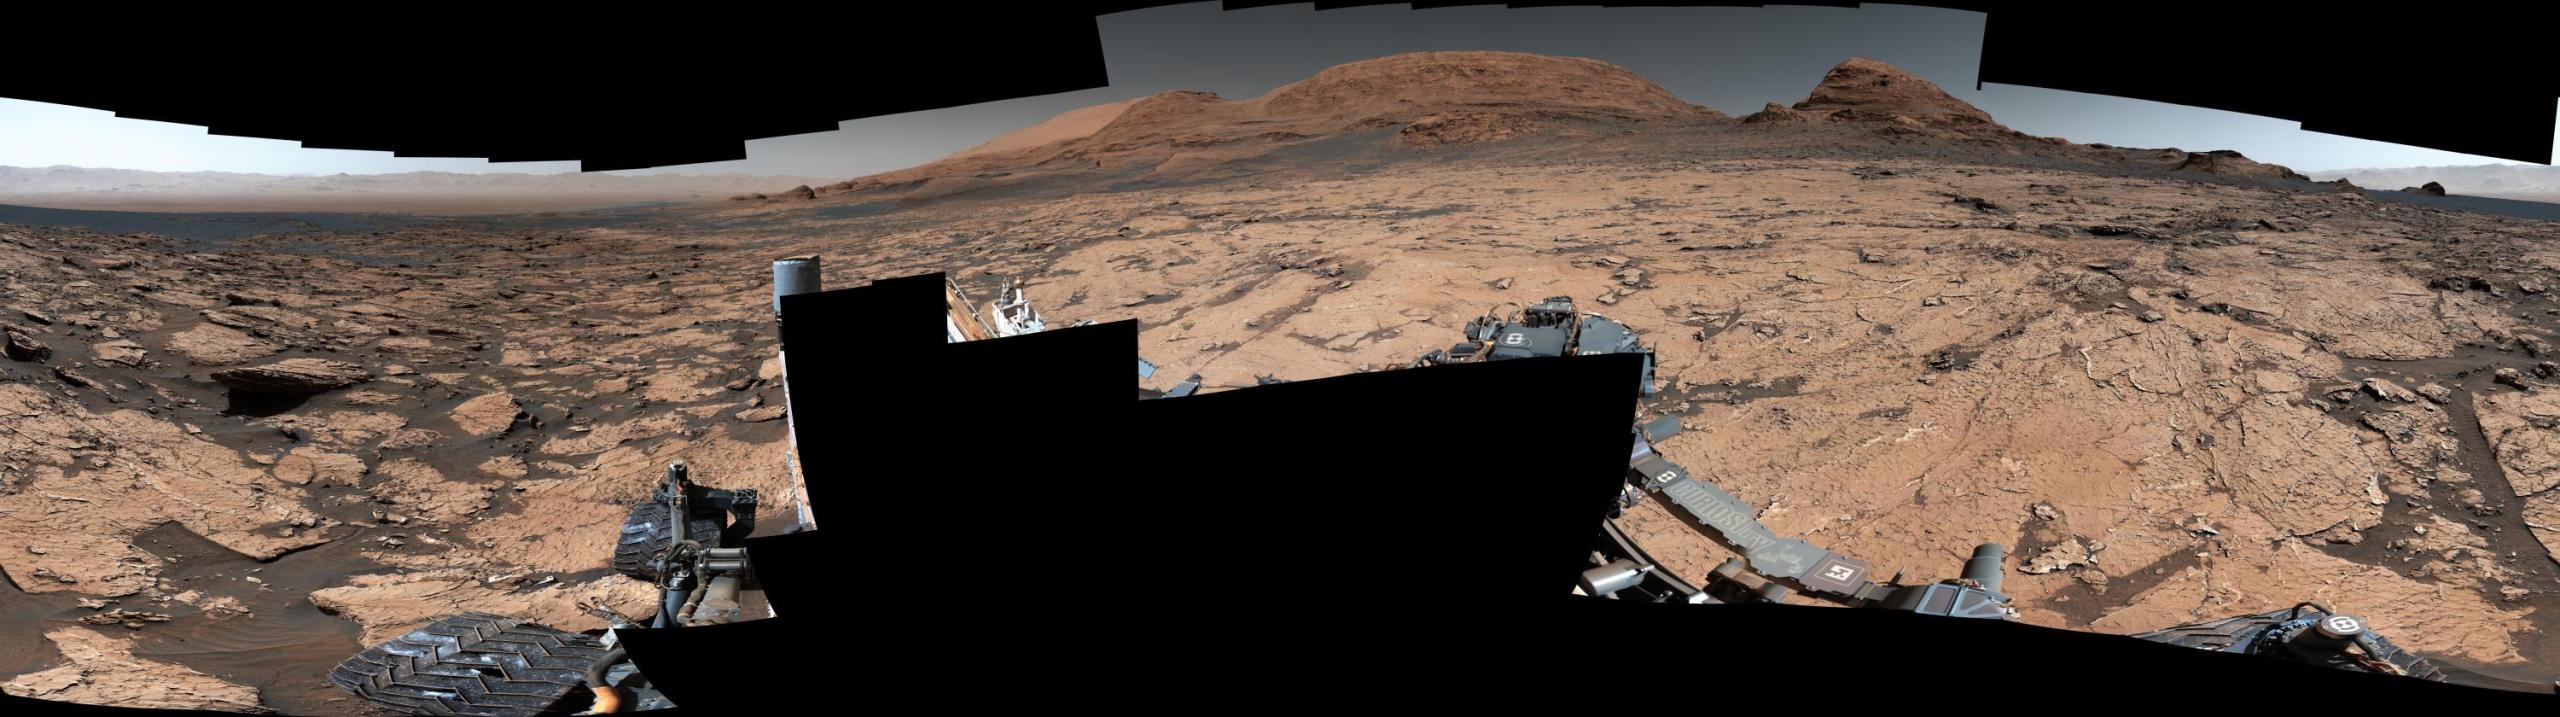 Este panorama captado por el vehículo explorador Curiosity de la NASA en Marte muestra un lugar apodado “Pontours”, donde los científicos detectaron antiguas grietas de barro preservadas, que se cree que se formaron durante largos ciclos de condiciones lluviosas y secas a lo largo de muchos años. Se piensa que tales ciclos favorecen las condiciones en las que podría formarse la vida. Crédito: NASA/JPL-Caltech/MSSS/IRAP